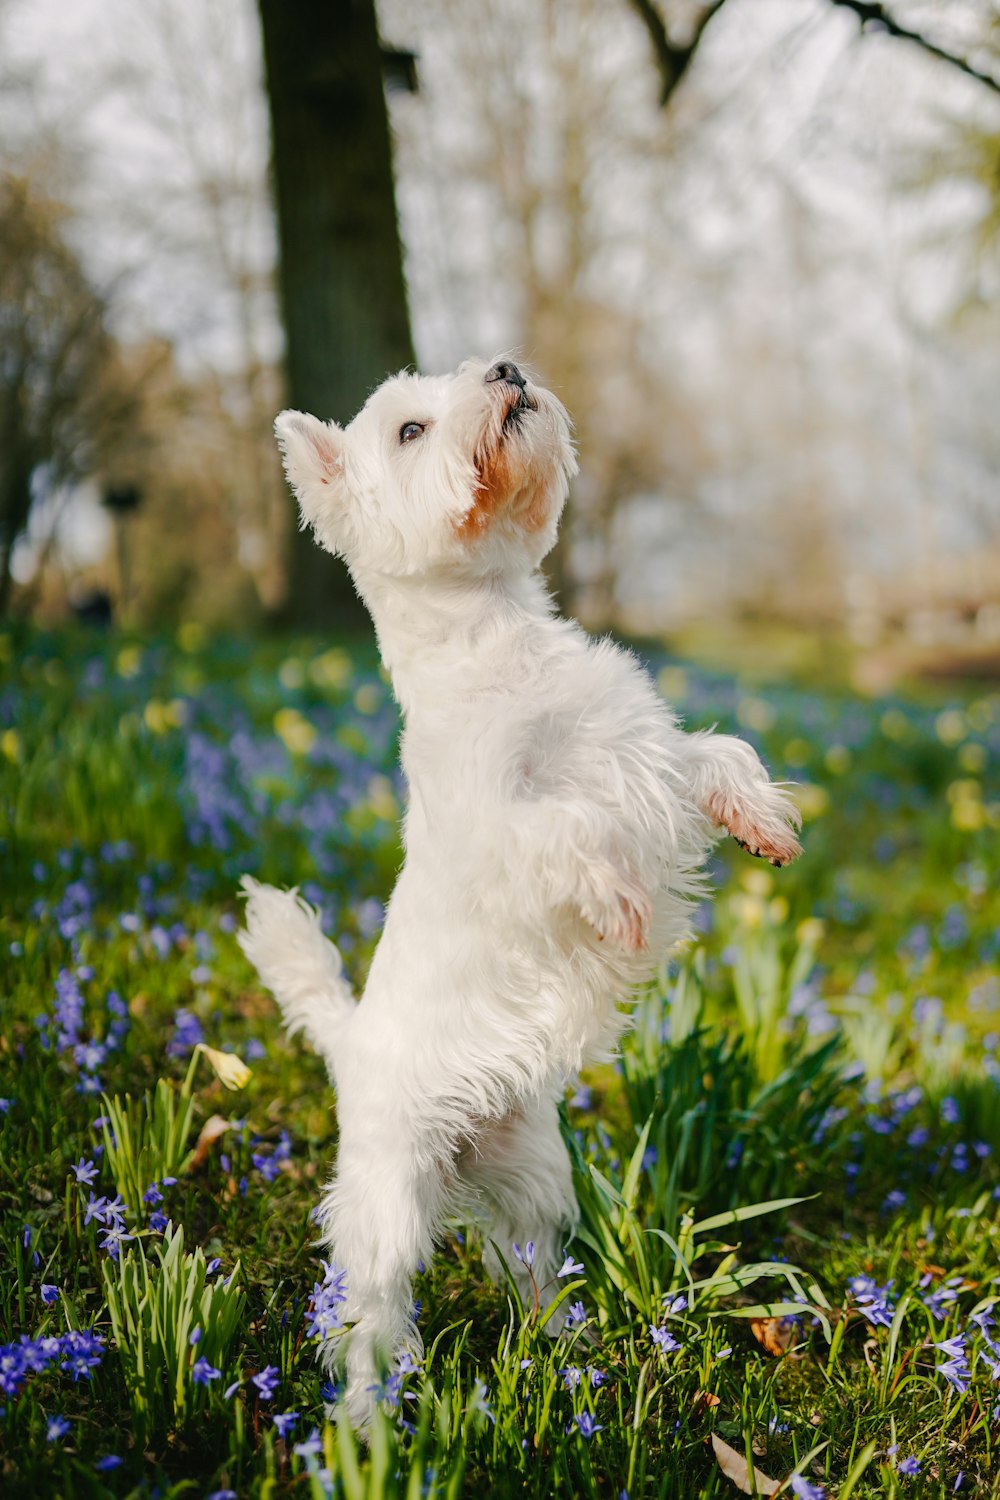 Perro pequeño de pelaje largo blanco en el campo de hierba verde durante el día